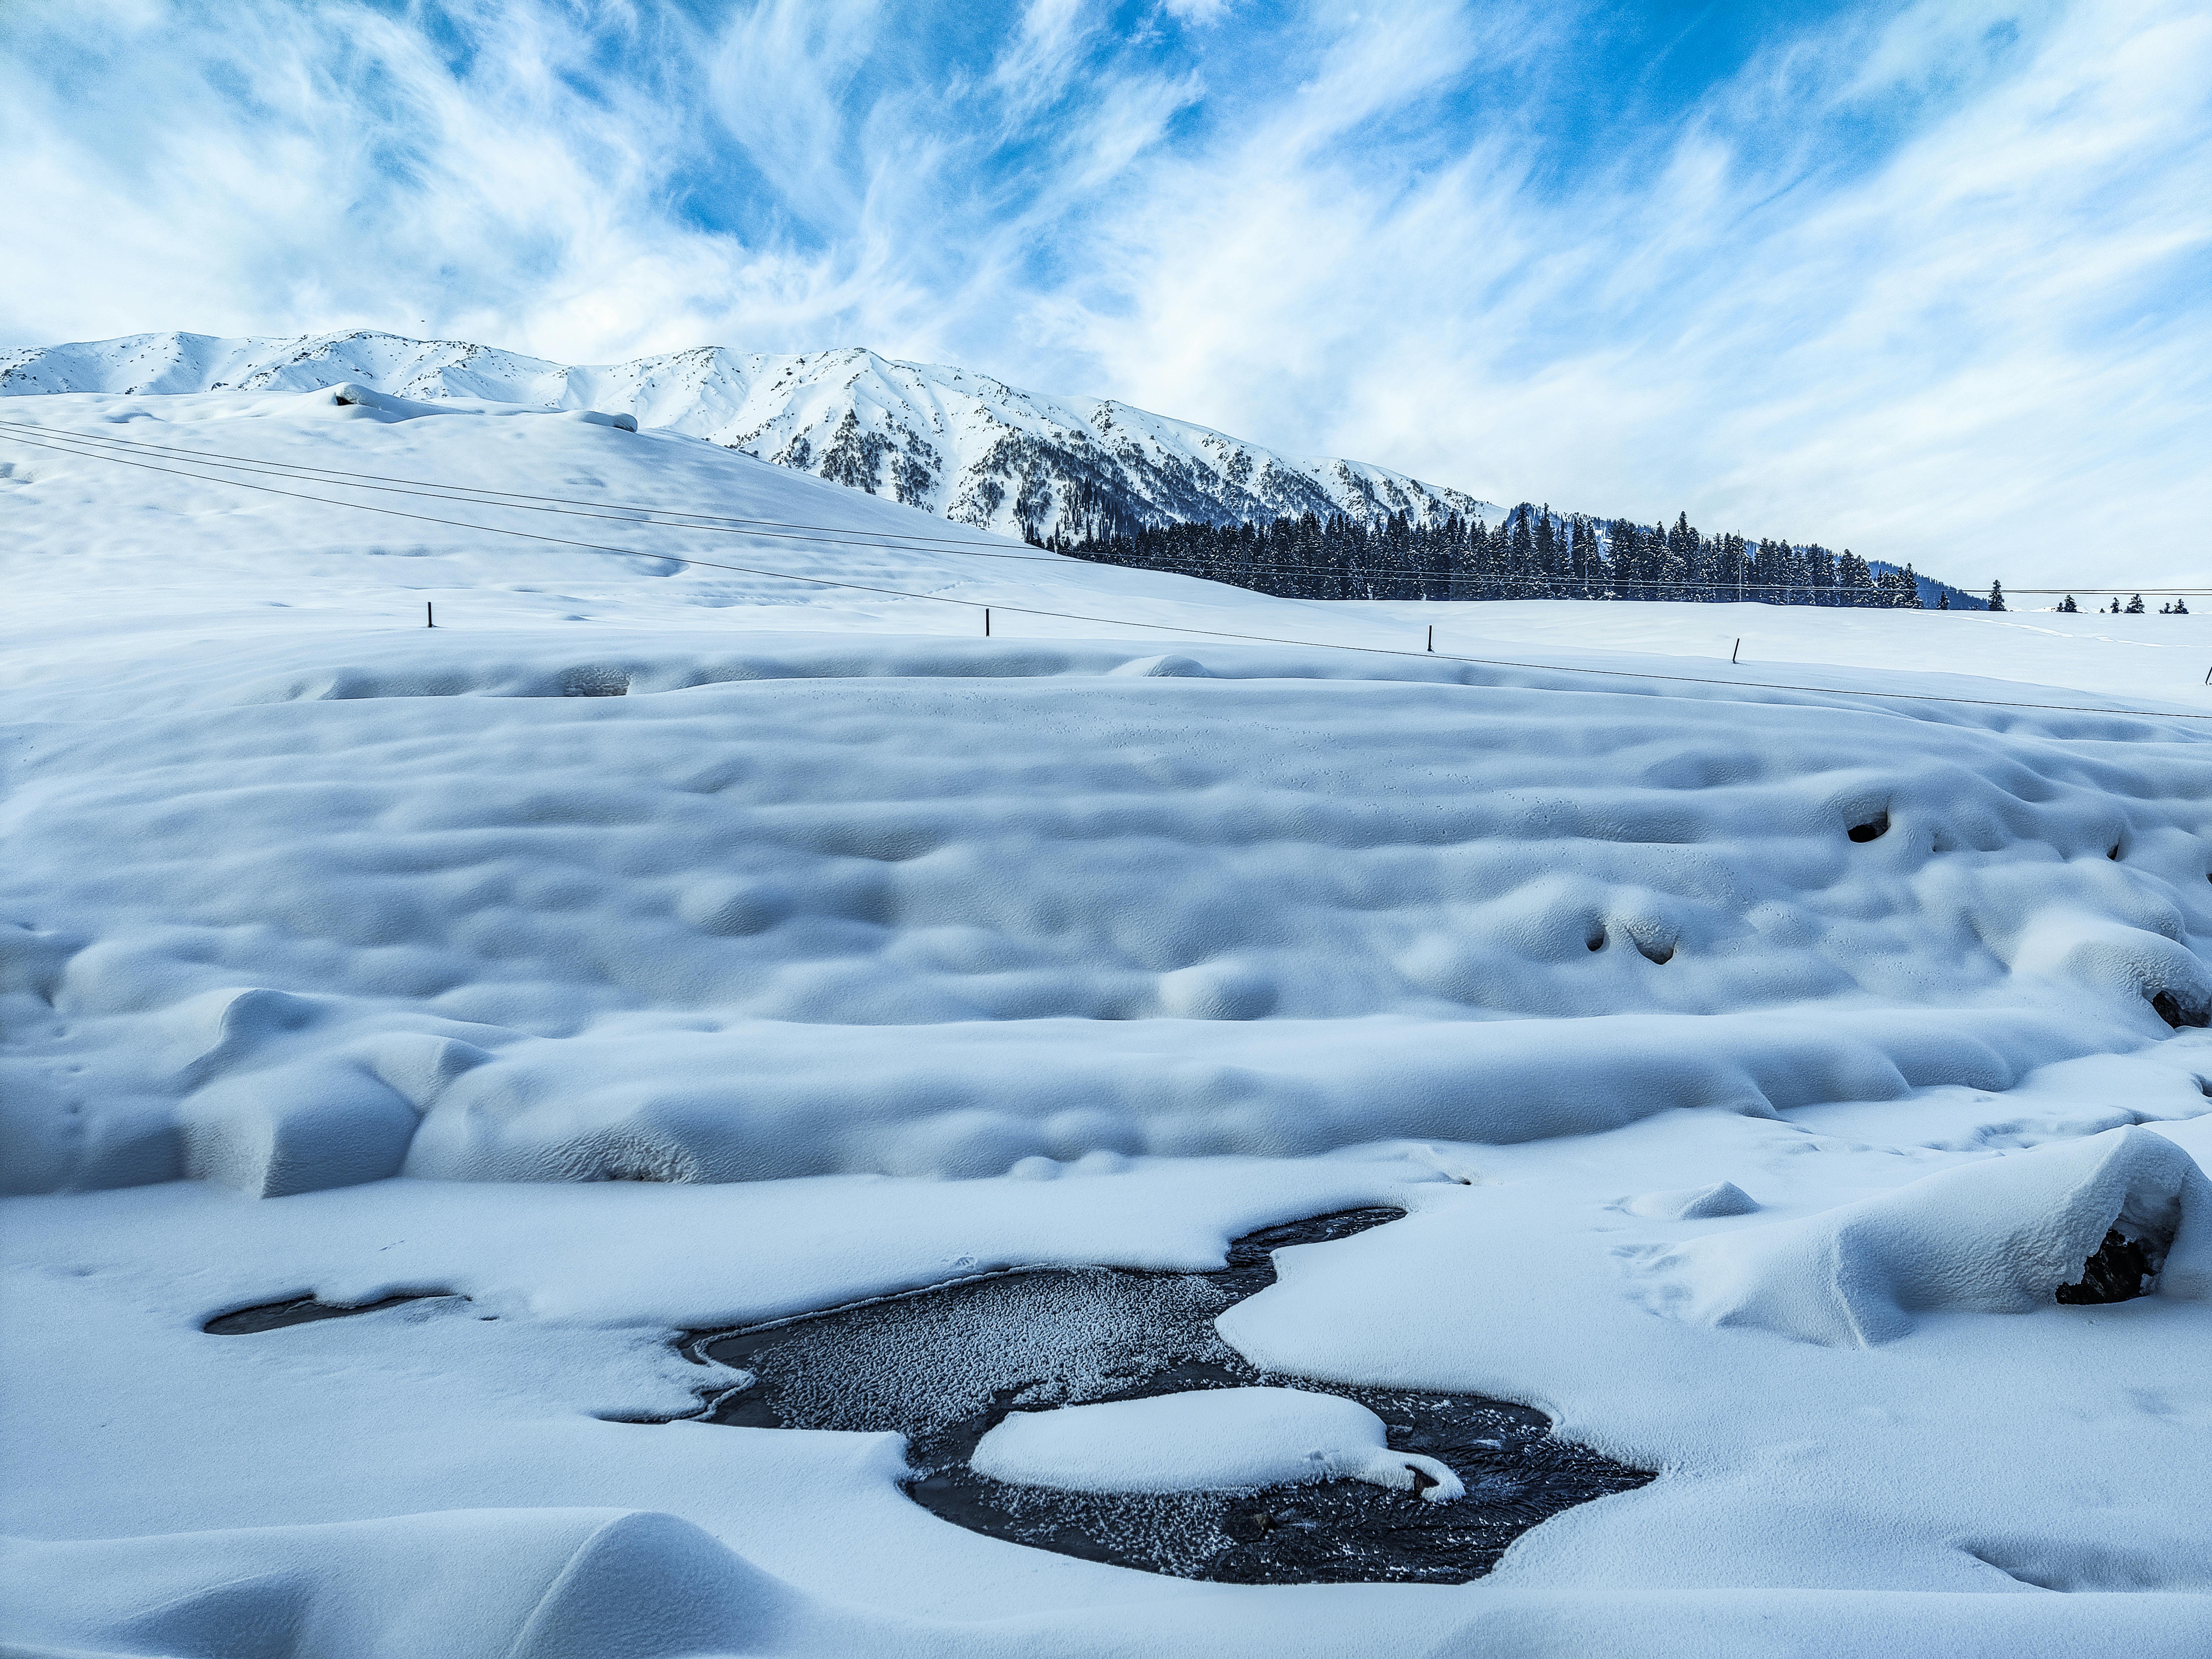 Snowy terrain near frozen lake